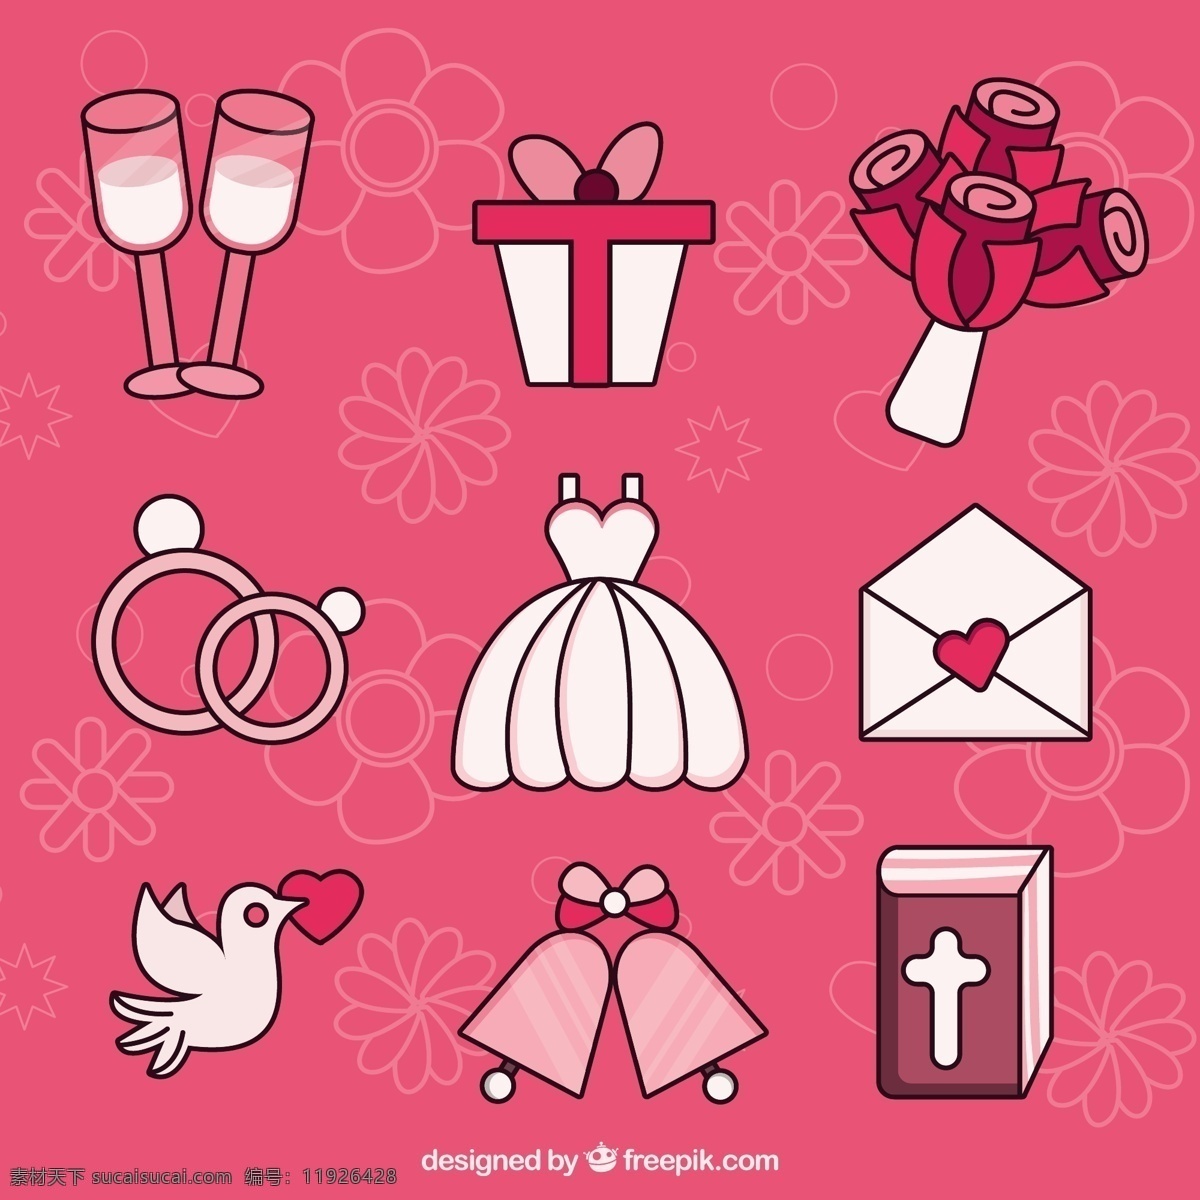 各种 婚礼 元素 装饰 图标 婚礼元素 装饰图标